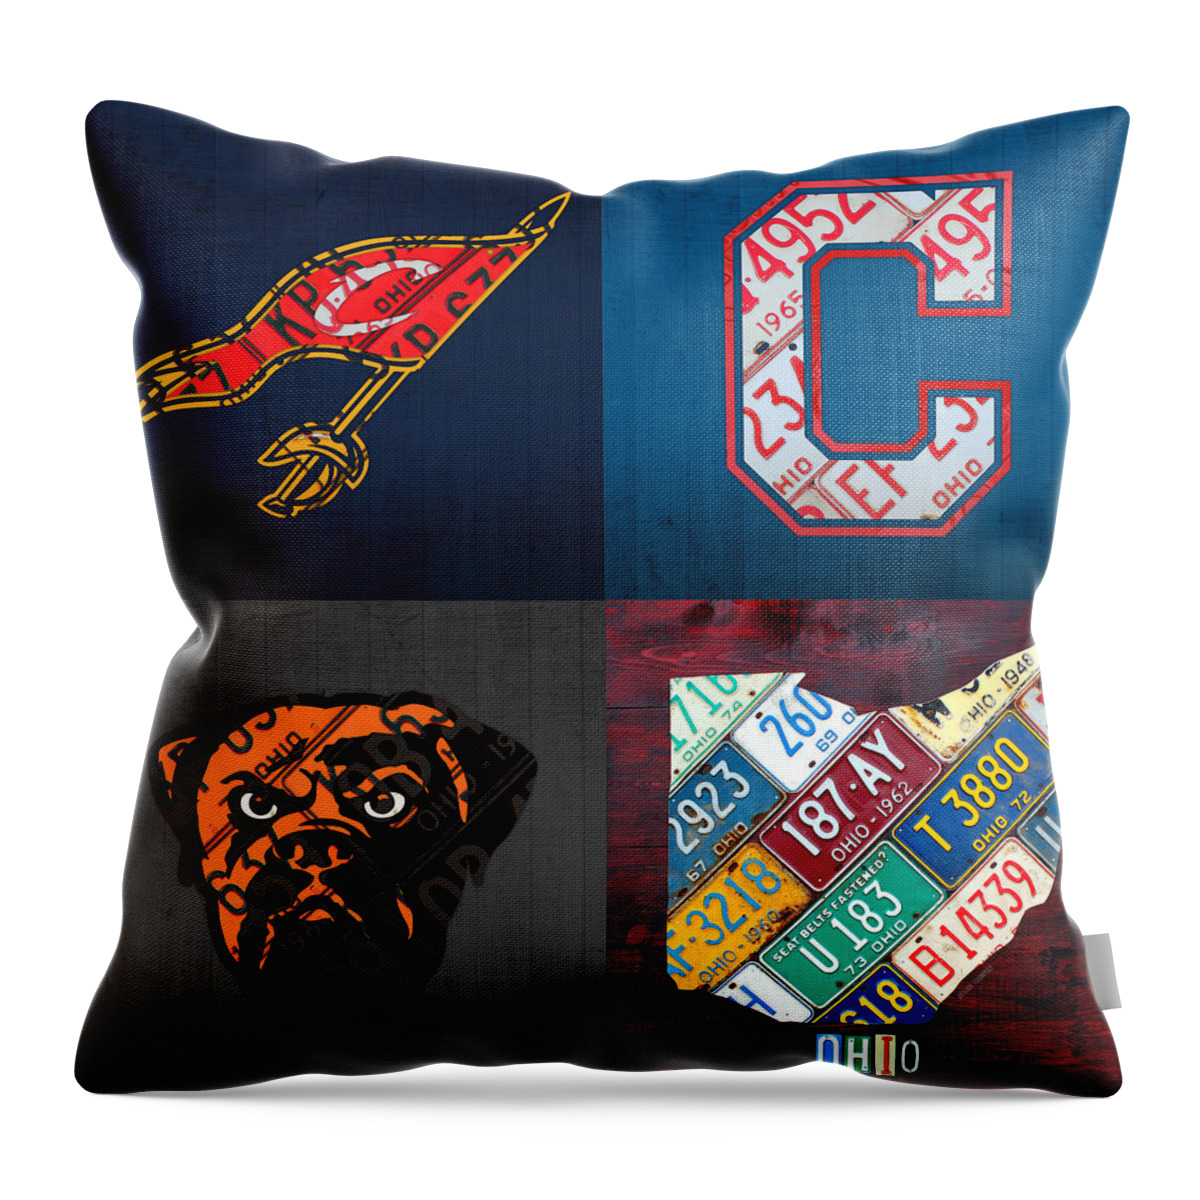 Cleveland Map Pillow